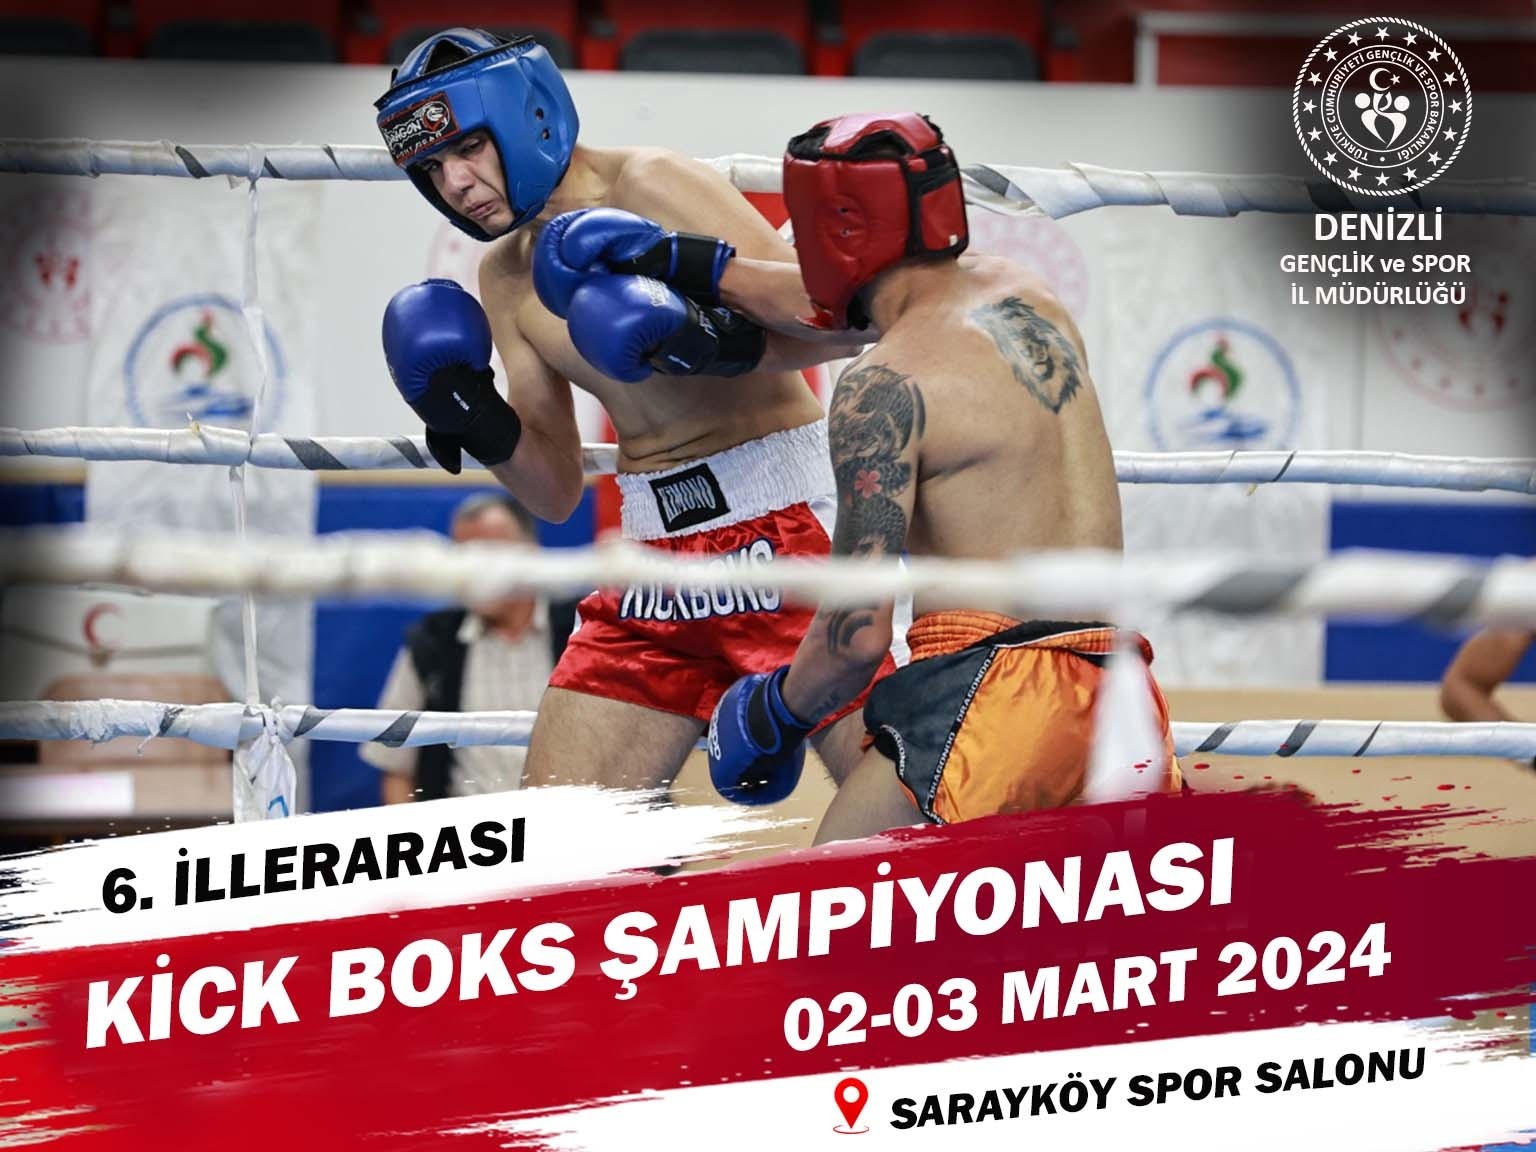 Sarayköy’de kick boks heyecanı yaşanacak
